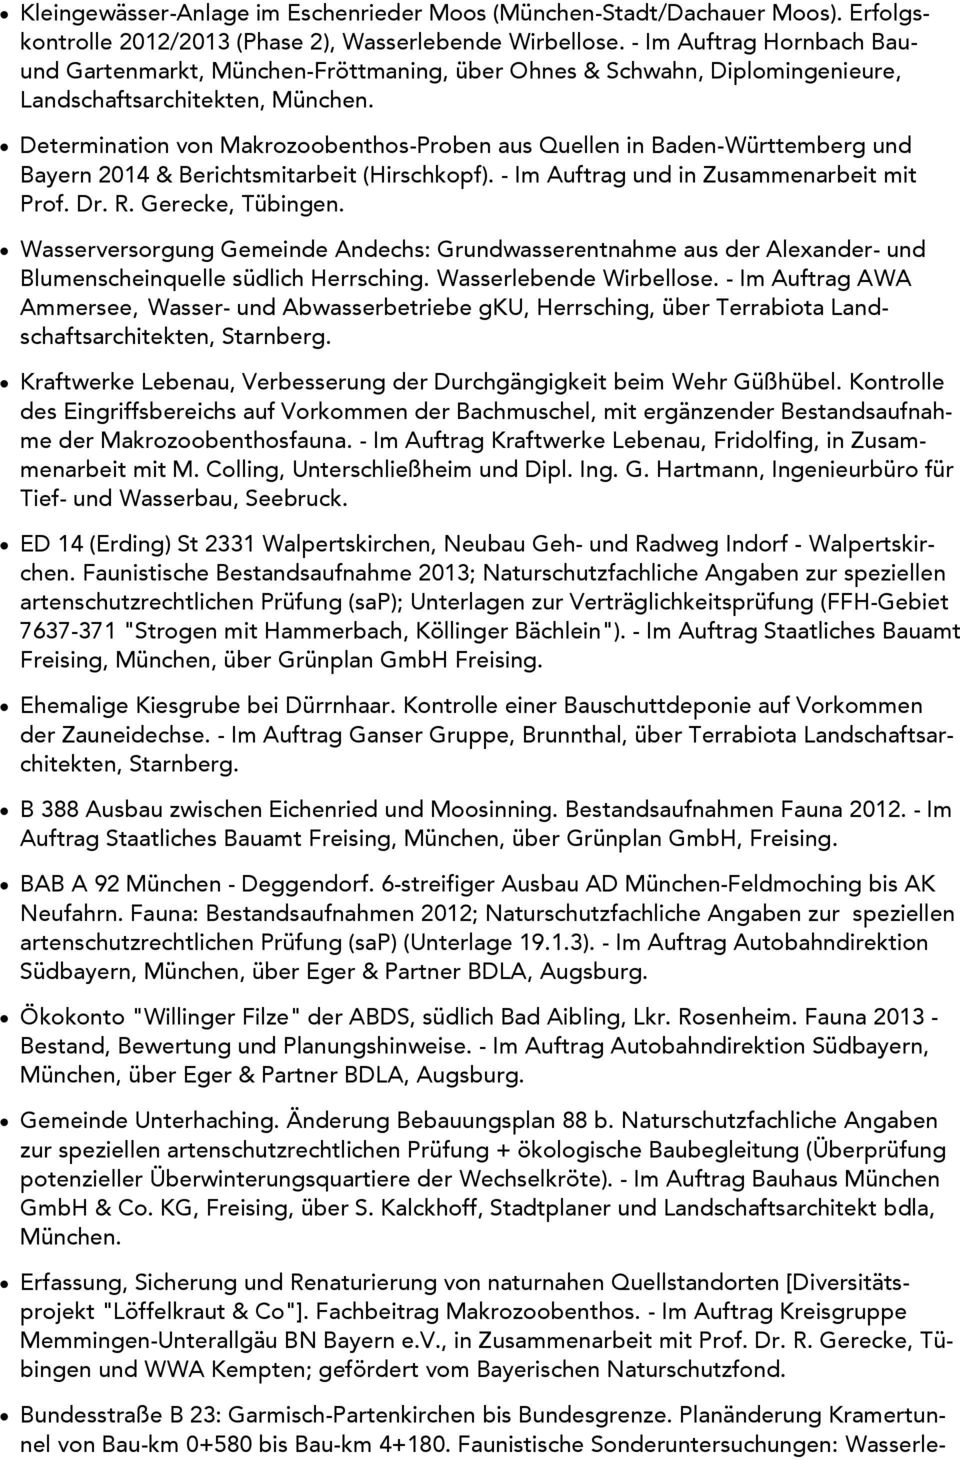 Determination von Makrozoobenthos-Proben aus Quellen in Baden-Württemberg und Bayern 2014 & Berichtsmitarbeit (Hirschkopf). - Im Auftrag und in Zusammenarbeit mit Prof. Dr. R. Gerecke, Tübingen.